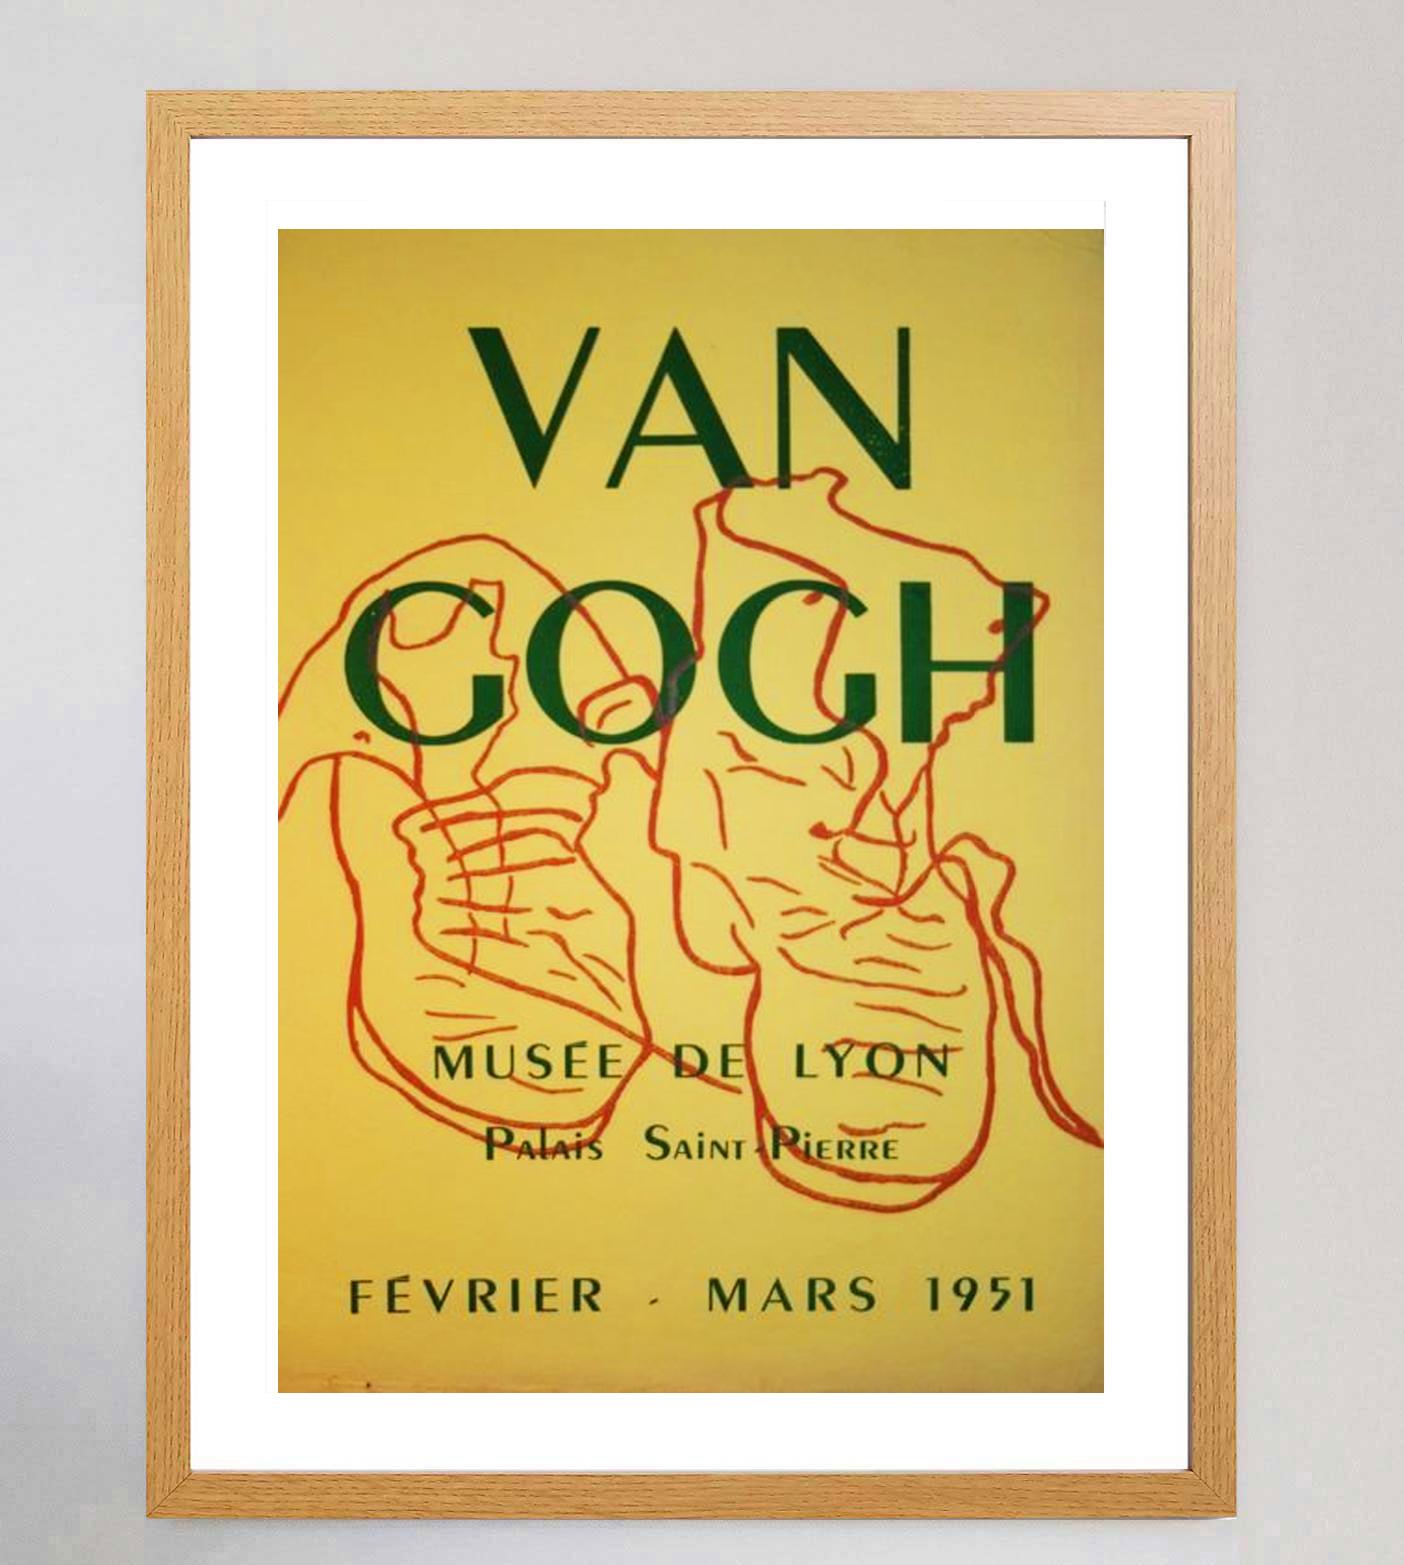 1951 Vincent van Gogh - Musee de Lyon Cartel Vintage Original Francés en venta